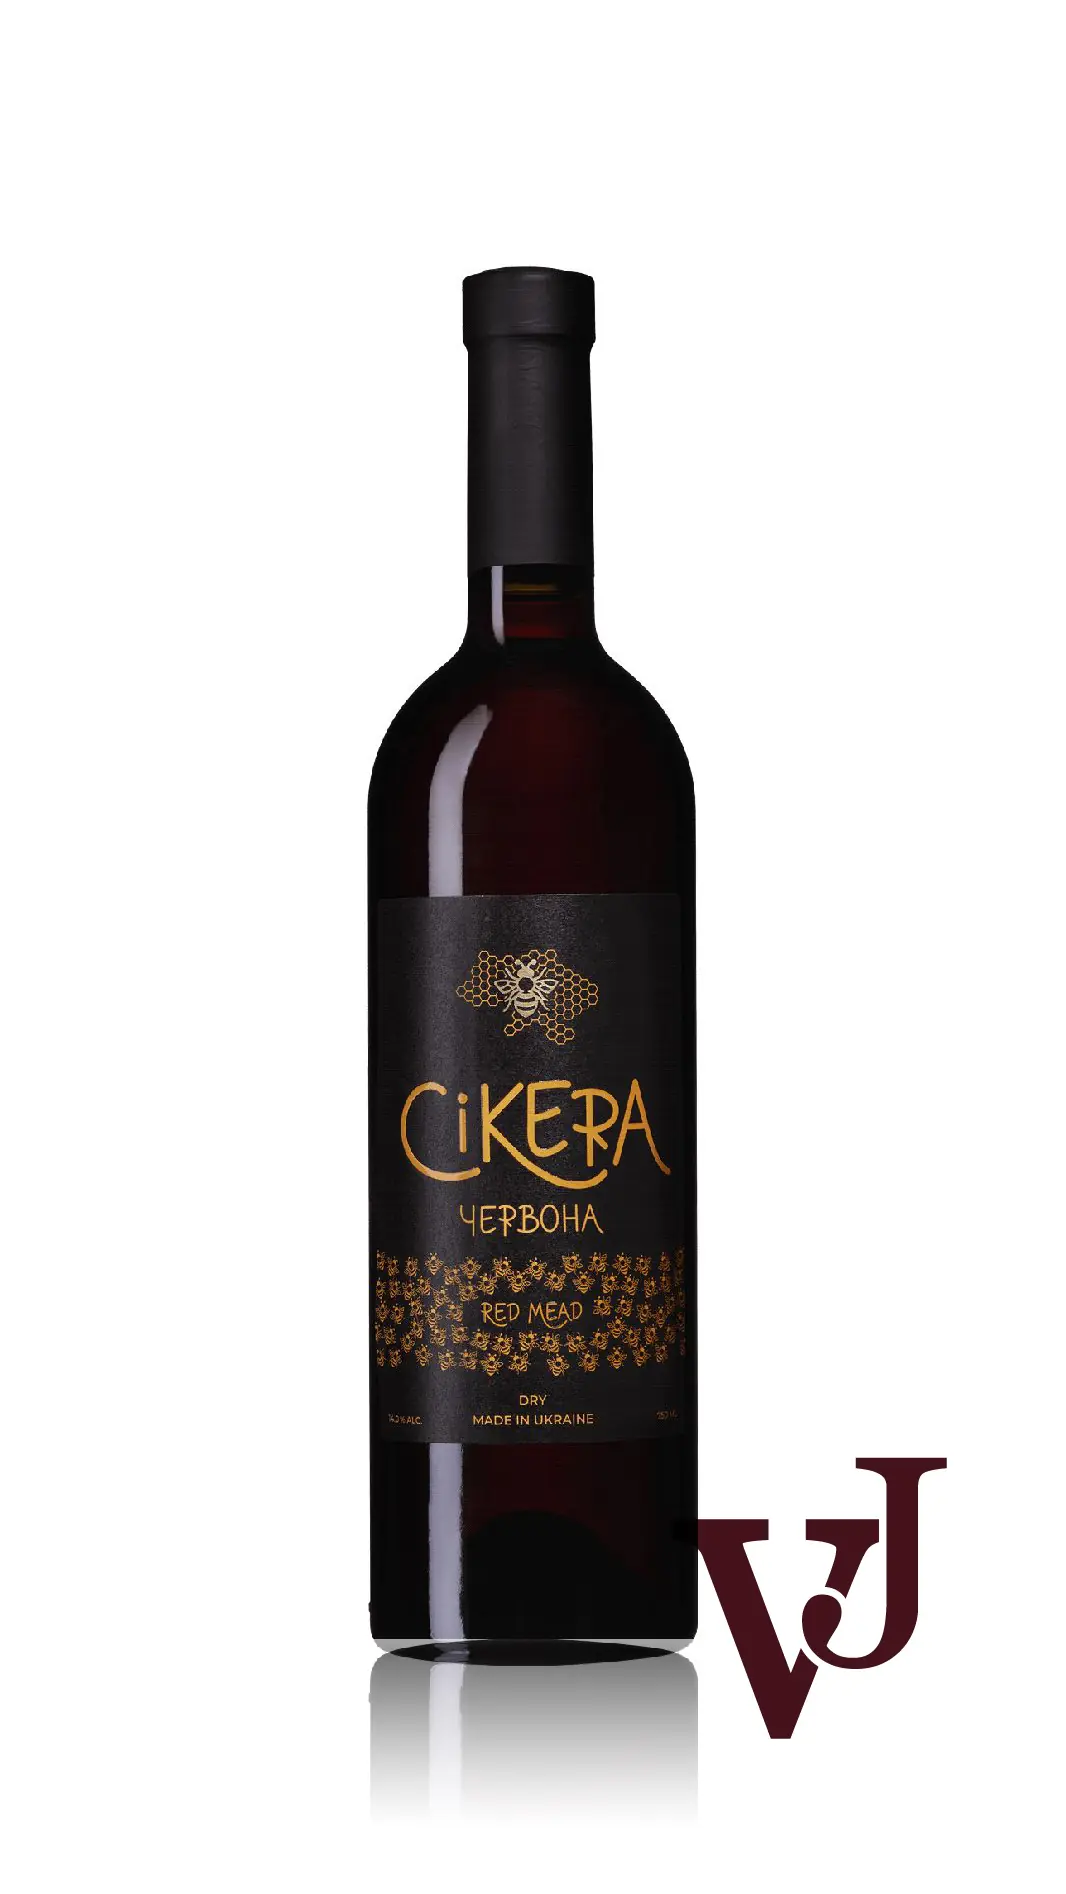 Övrigt Vin - Cikera Rött 2019 artikel nummer 5597501 från producenten LLC Medovyy Spas från Ukraina. - Vinjournalen.se